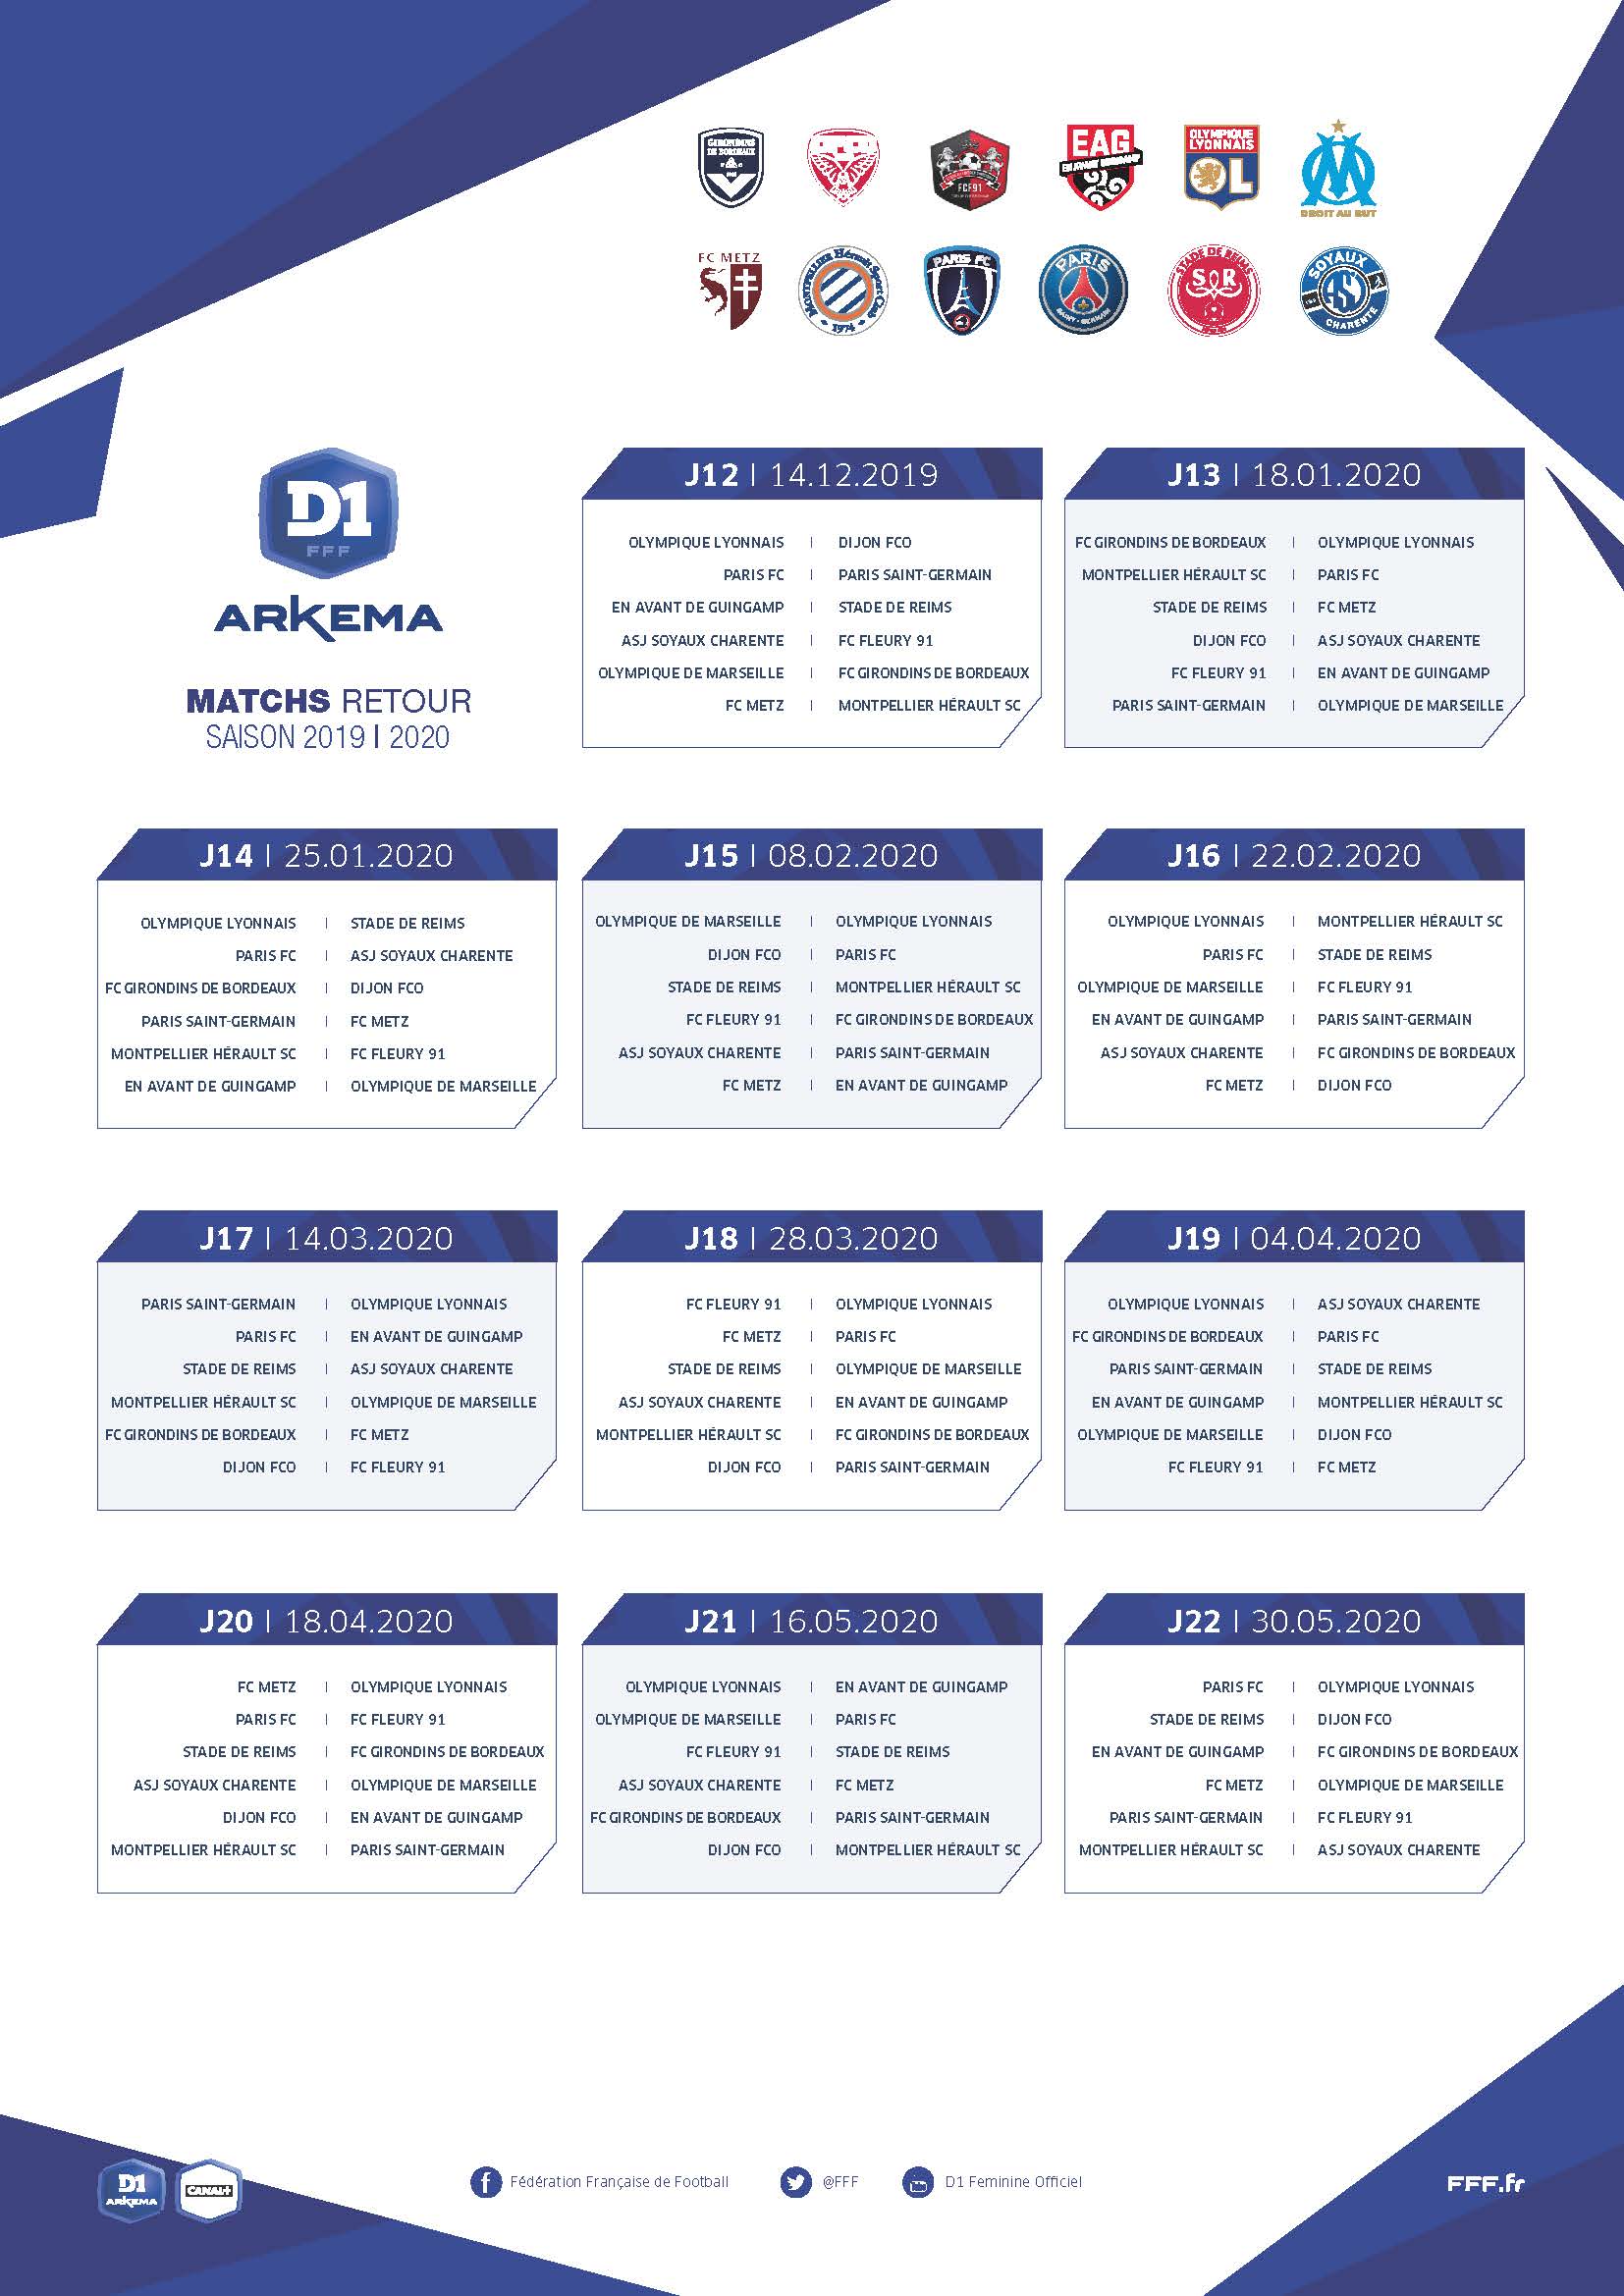 #D1 Arkema - Le calendrier des matchs est sorti